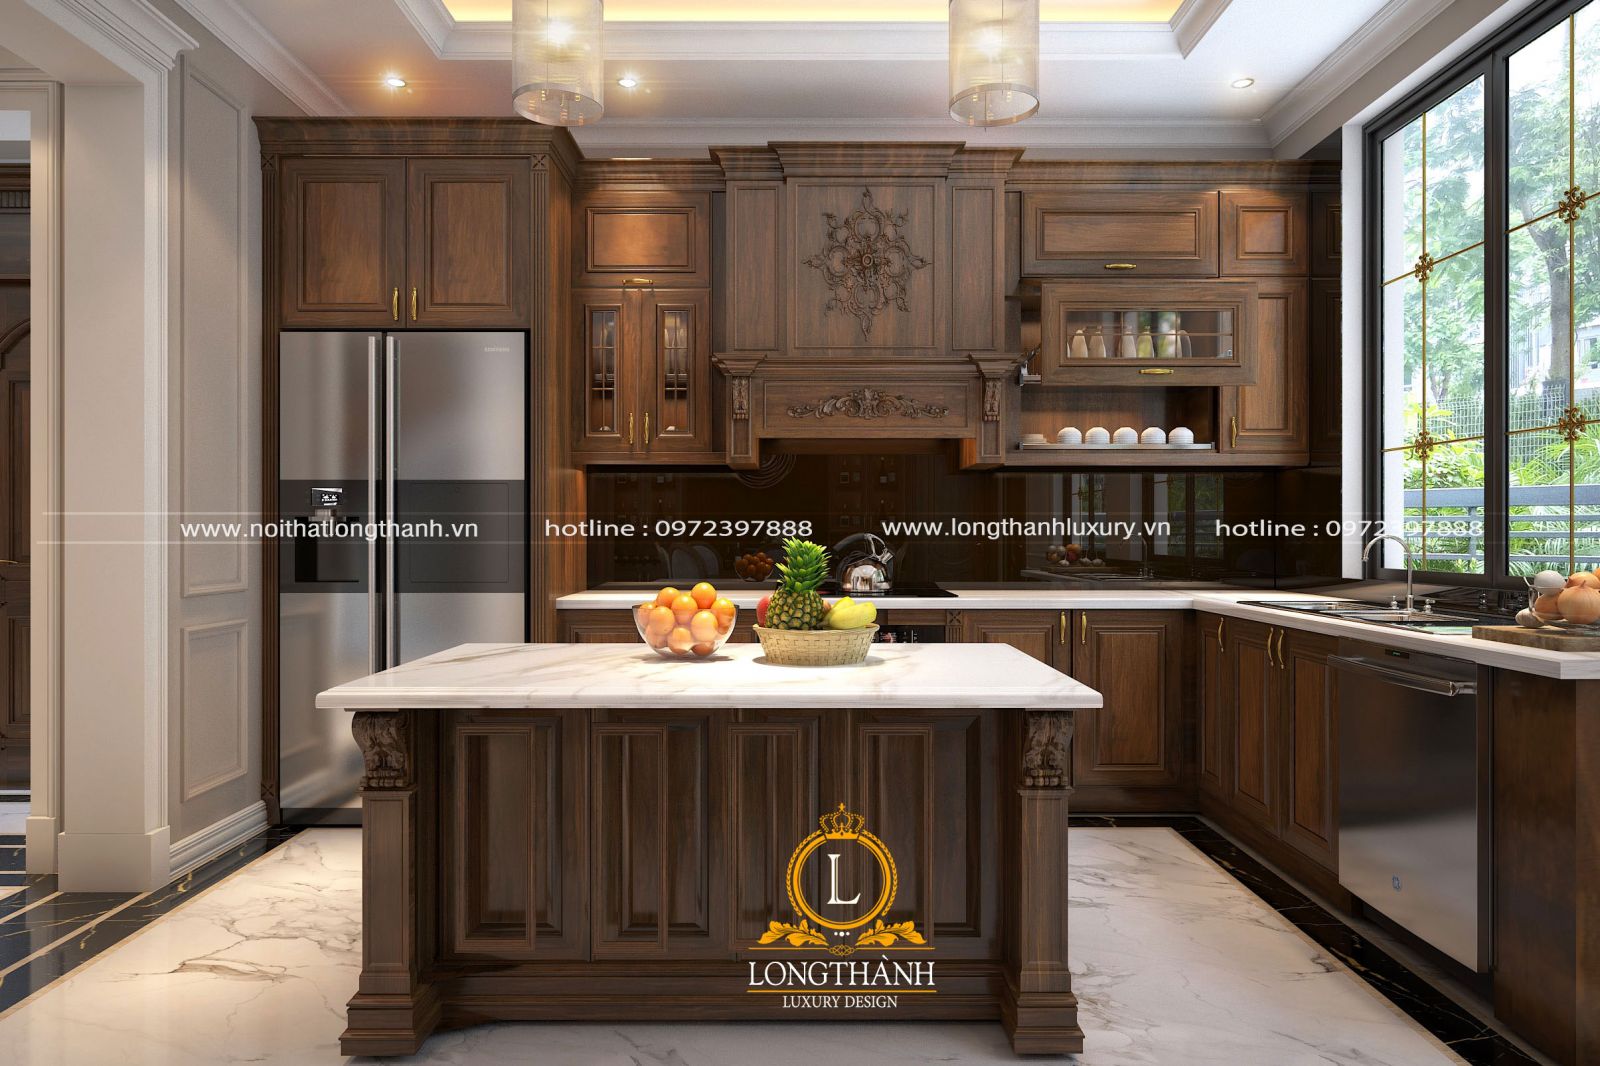 Tủ bếp tân cổ điển được thiết kế phù hợp với diện tích không gian nội thất